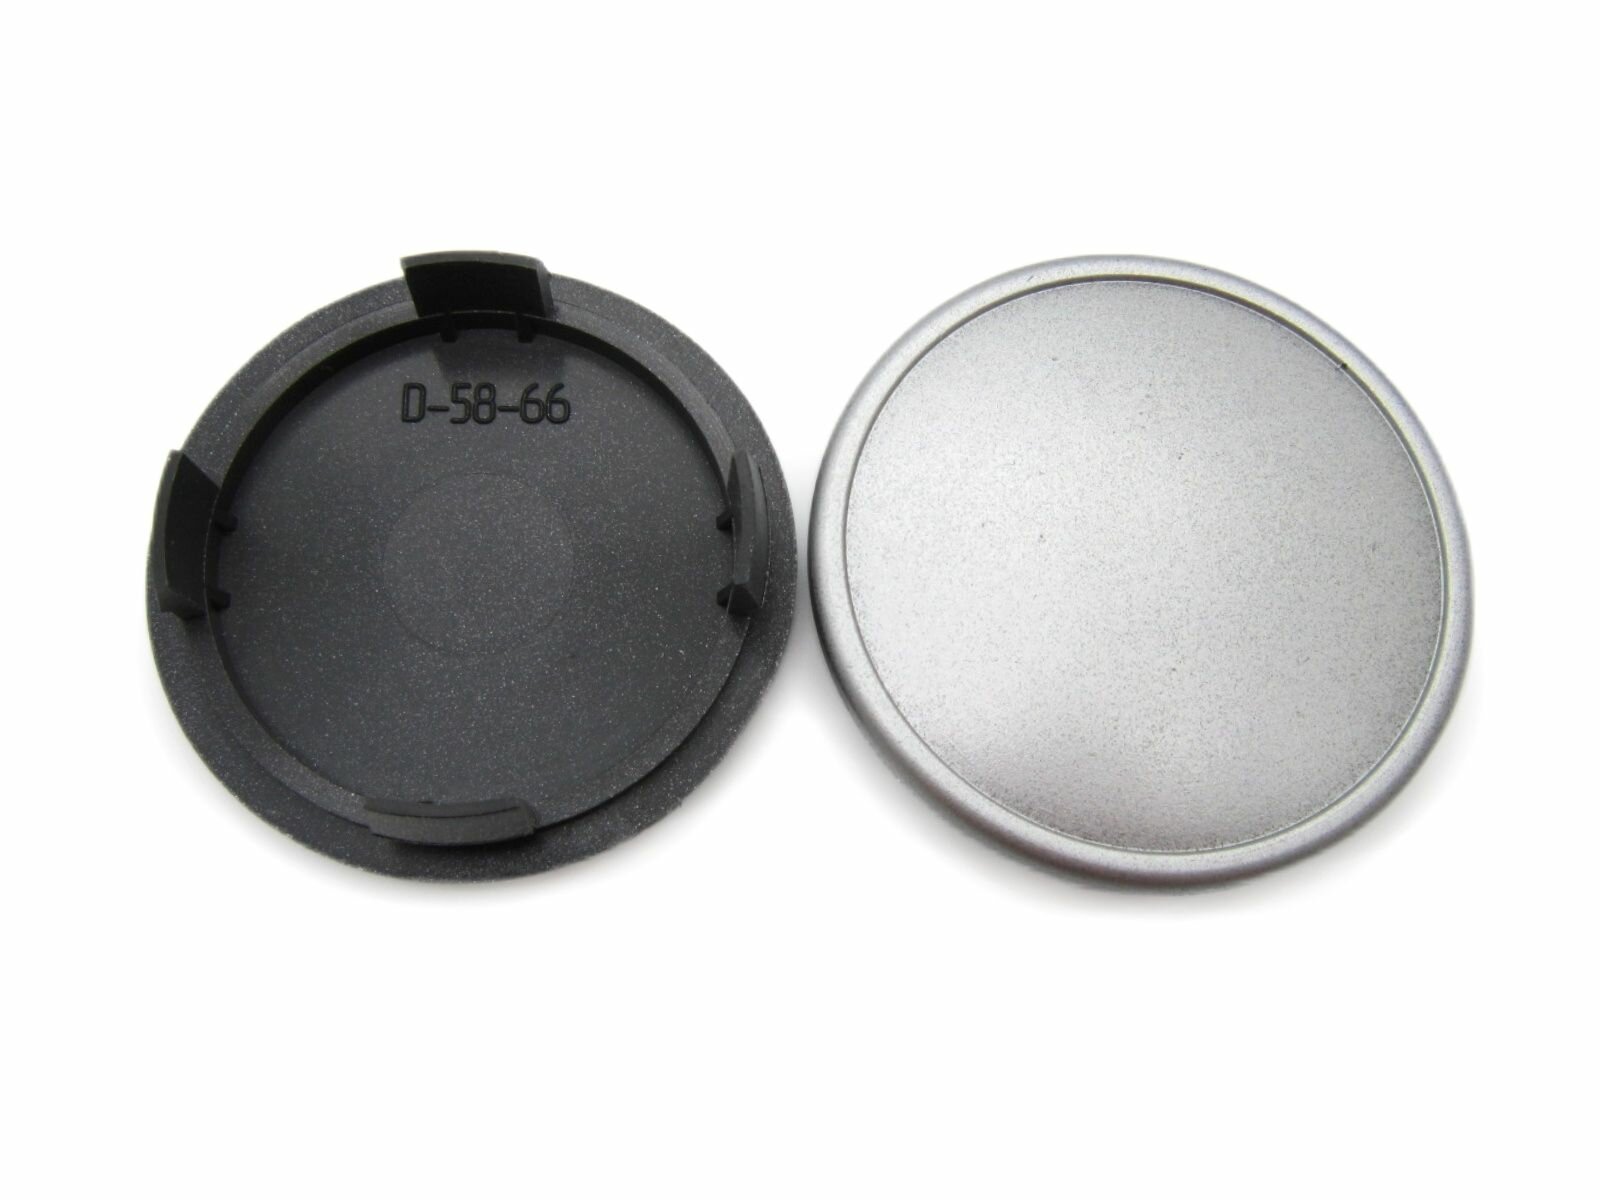 Колпачки заглушки на литые диски 66/58/12 мм D-58-66 2 шт.